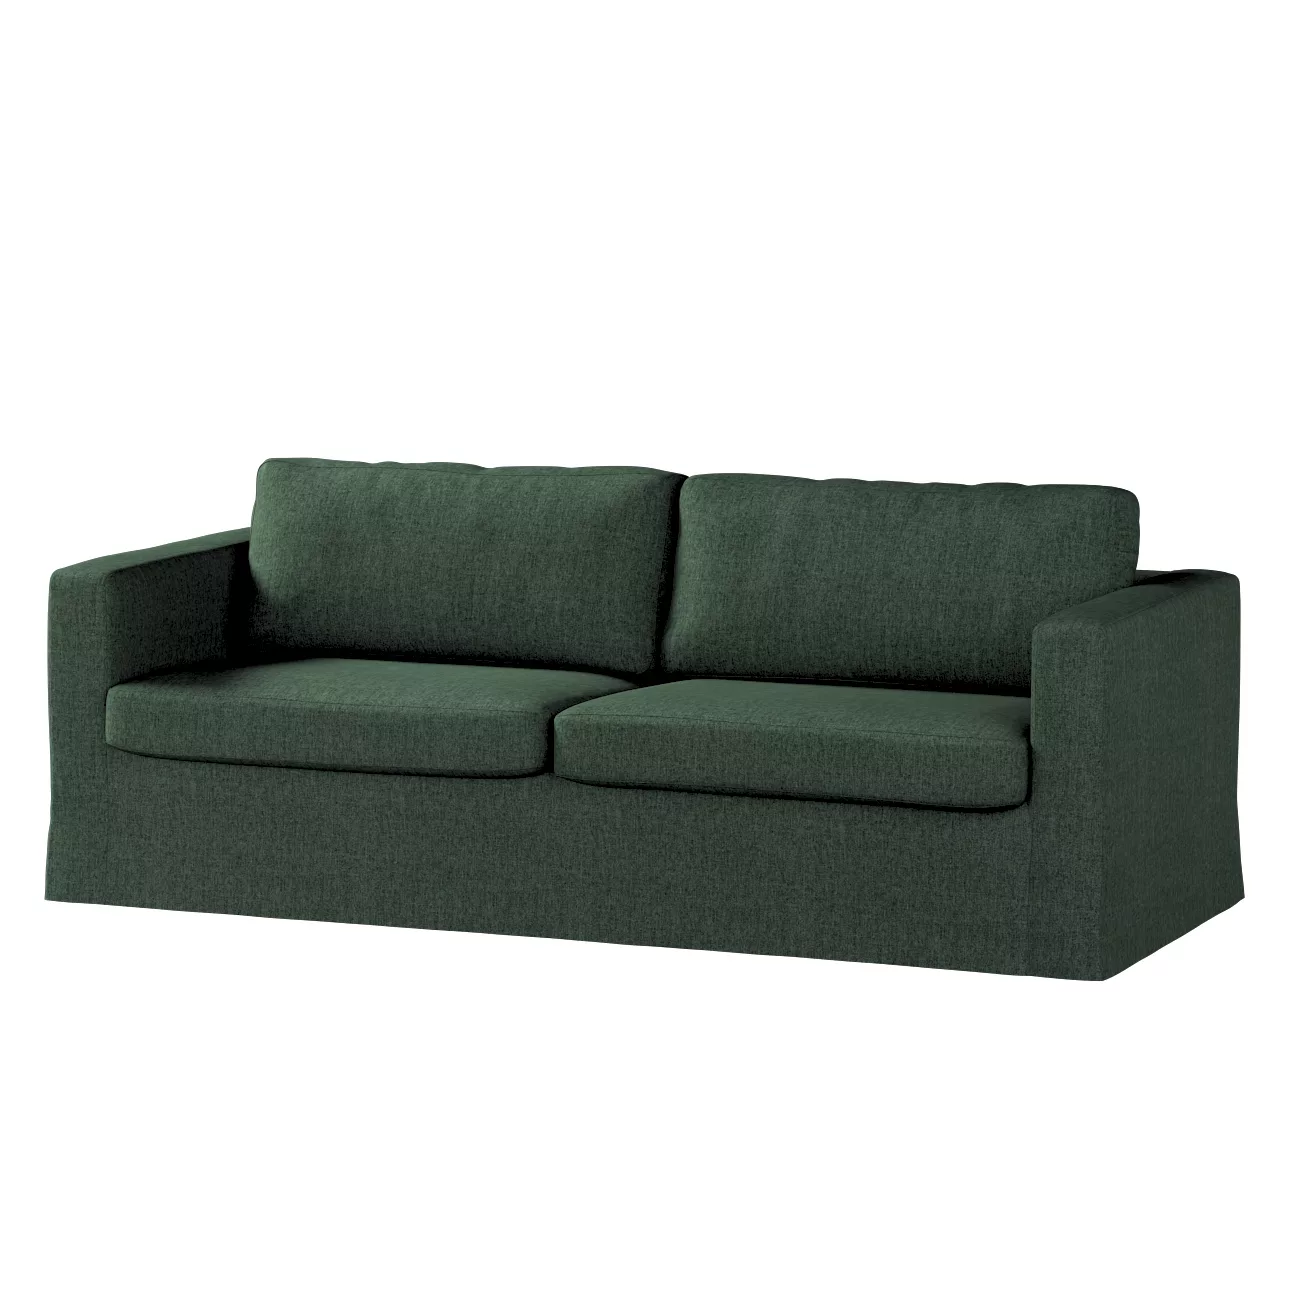 Bezug für Karlstad 3-Sitzer Sofa nicht ausklappbar, lang, dunkelgrün, Bezug günstig online kaufen